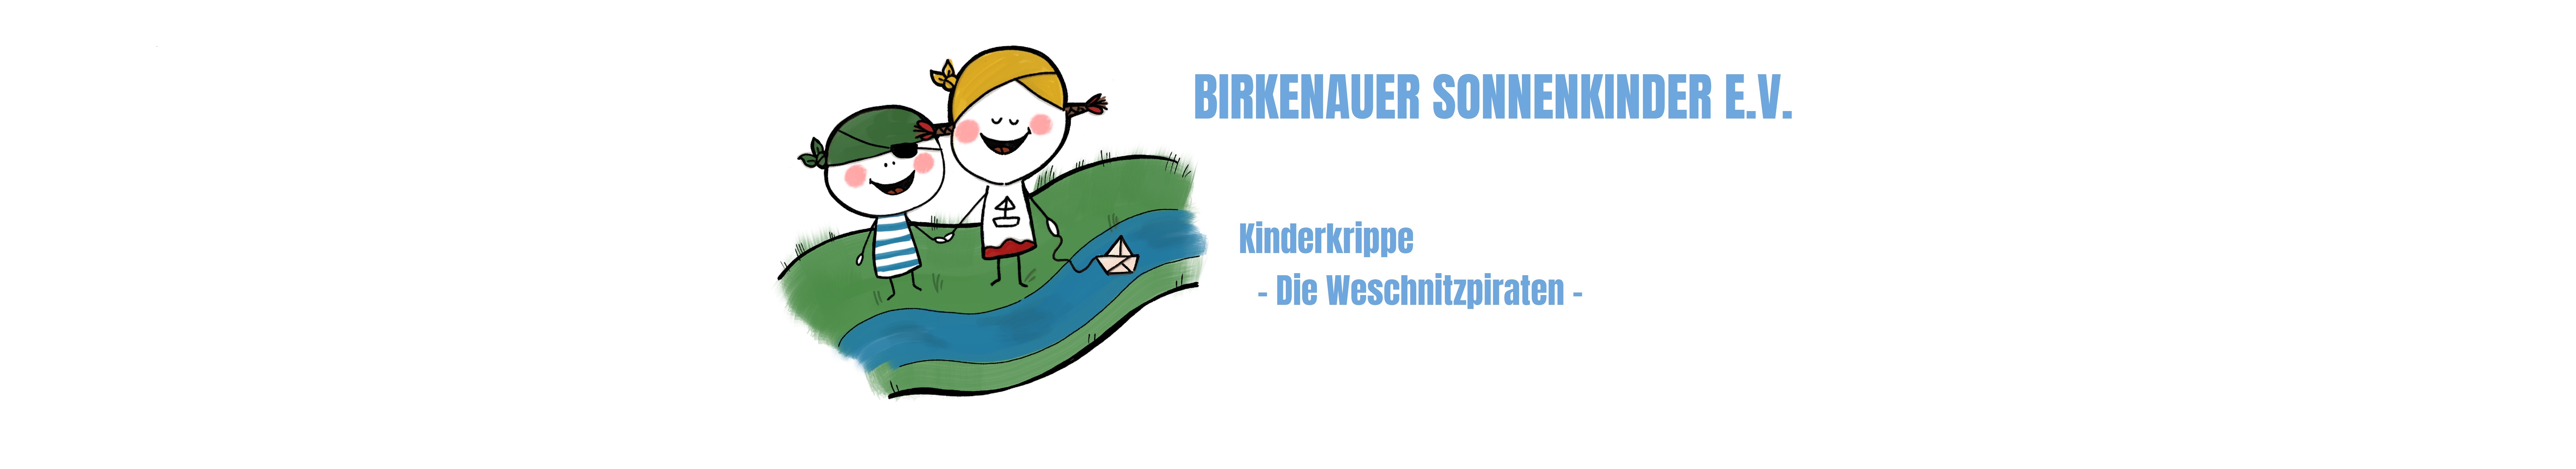 (c) Birkenauer-sonnenkinder.de